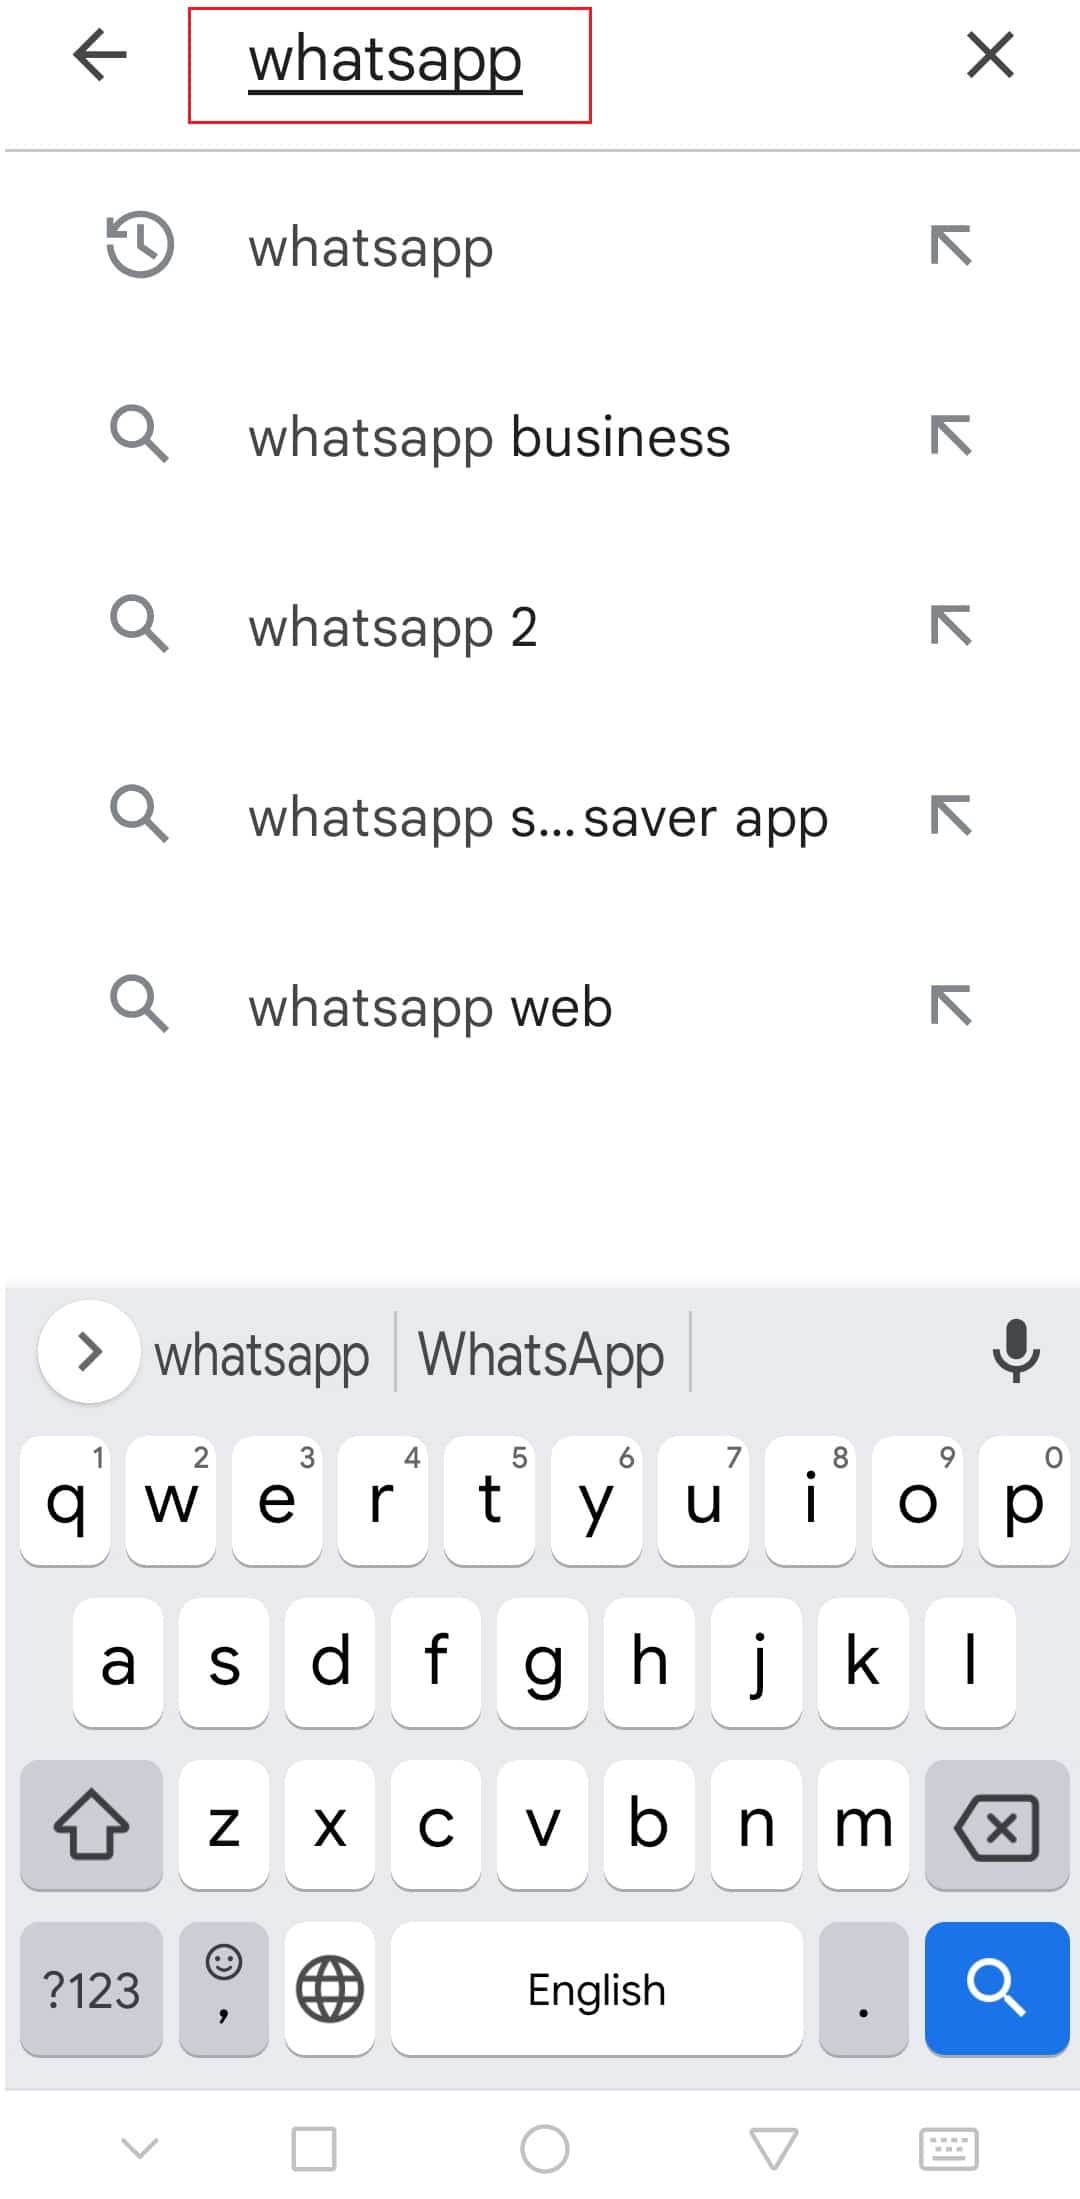 vyhľadajte whatsapp v aplikácii obchodu Google Play pre Android